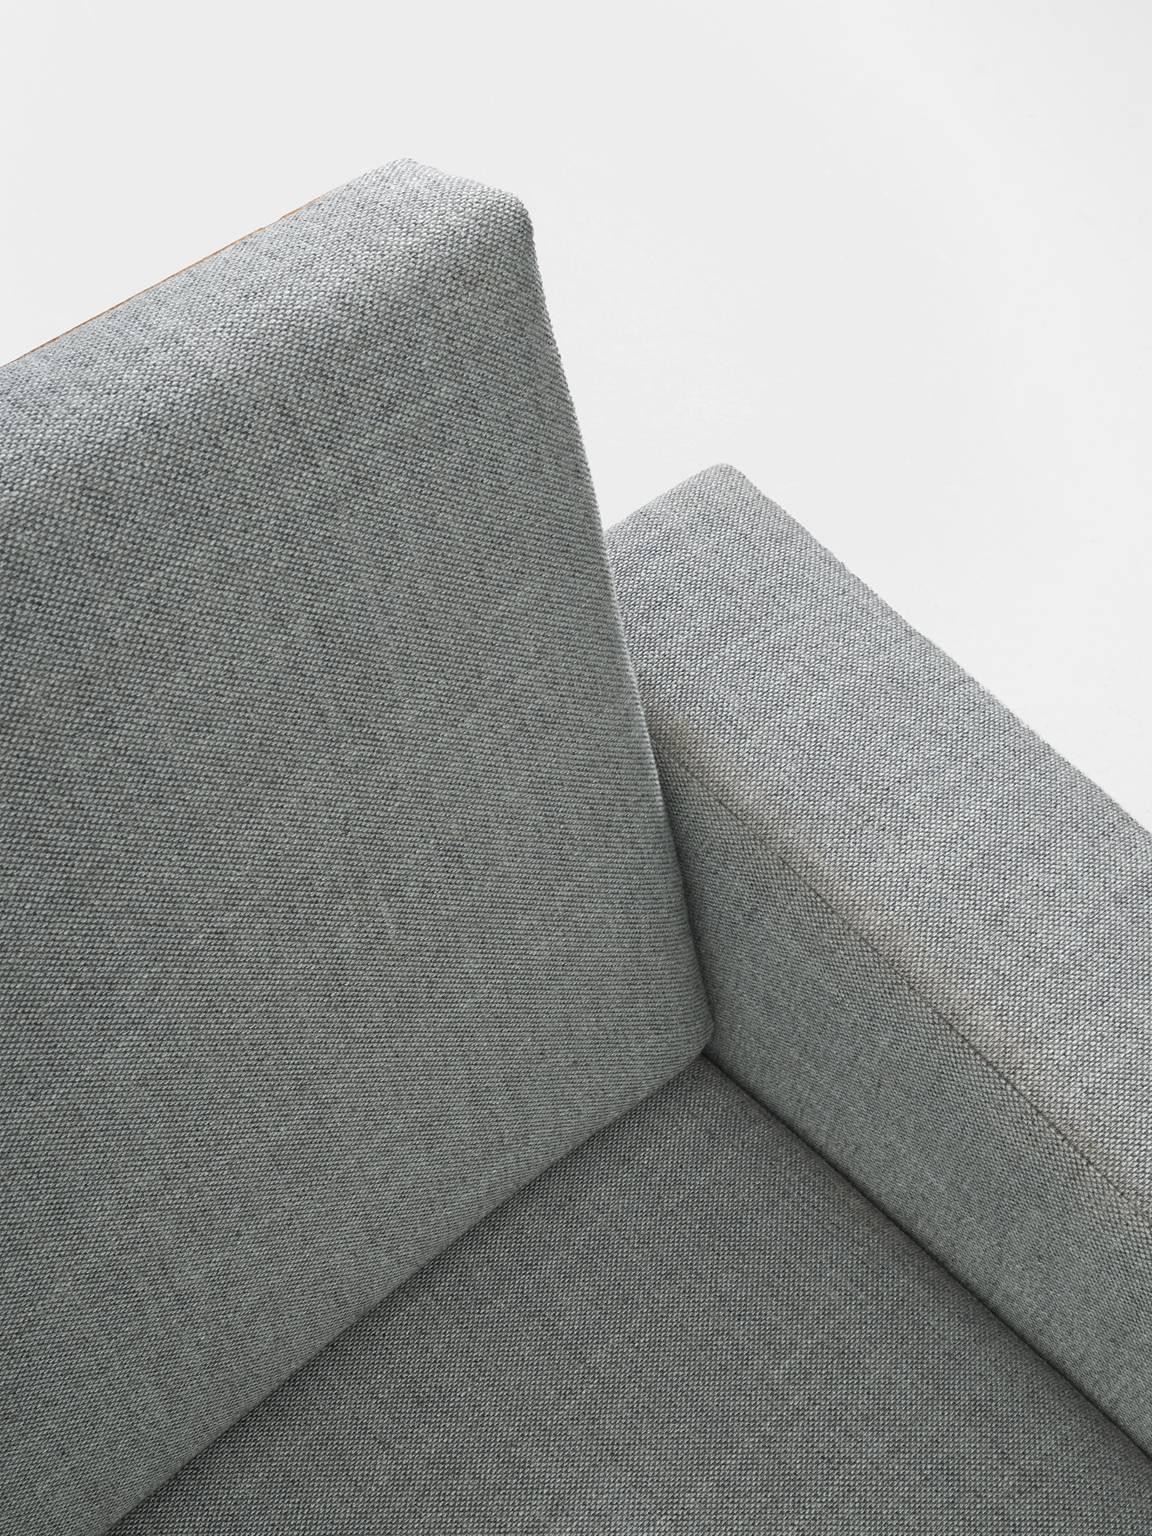 Fabric Gustav Thams Upholstered Danish Sofa in Oak